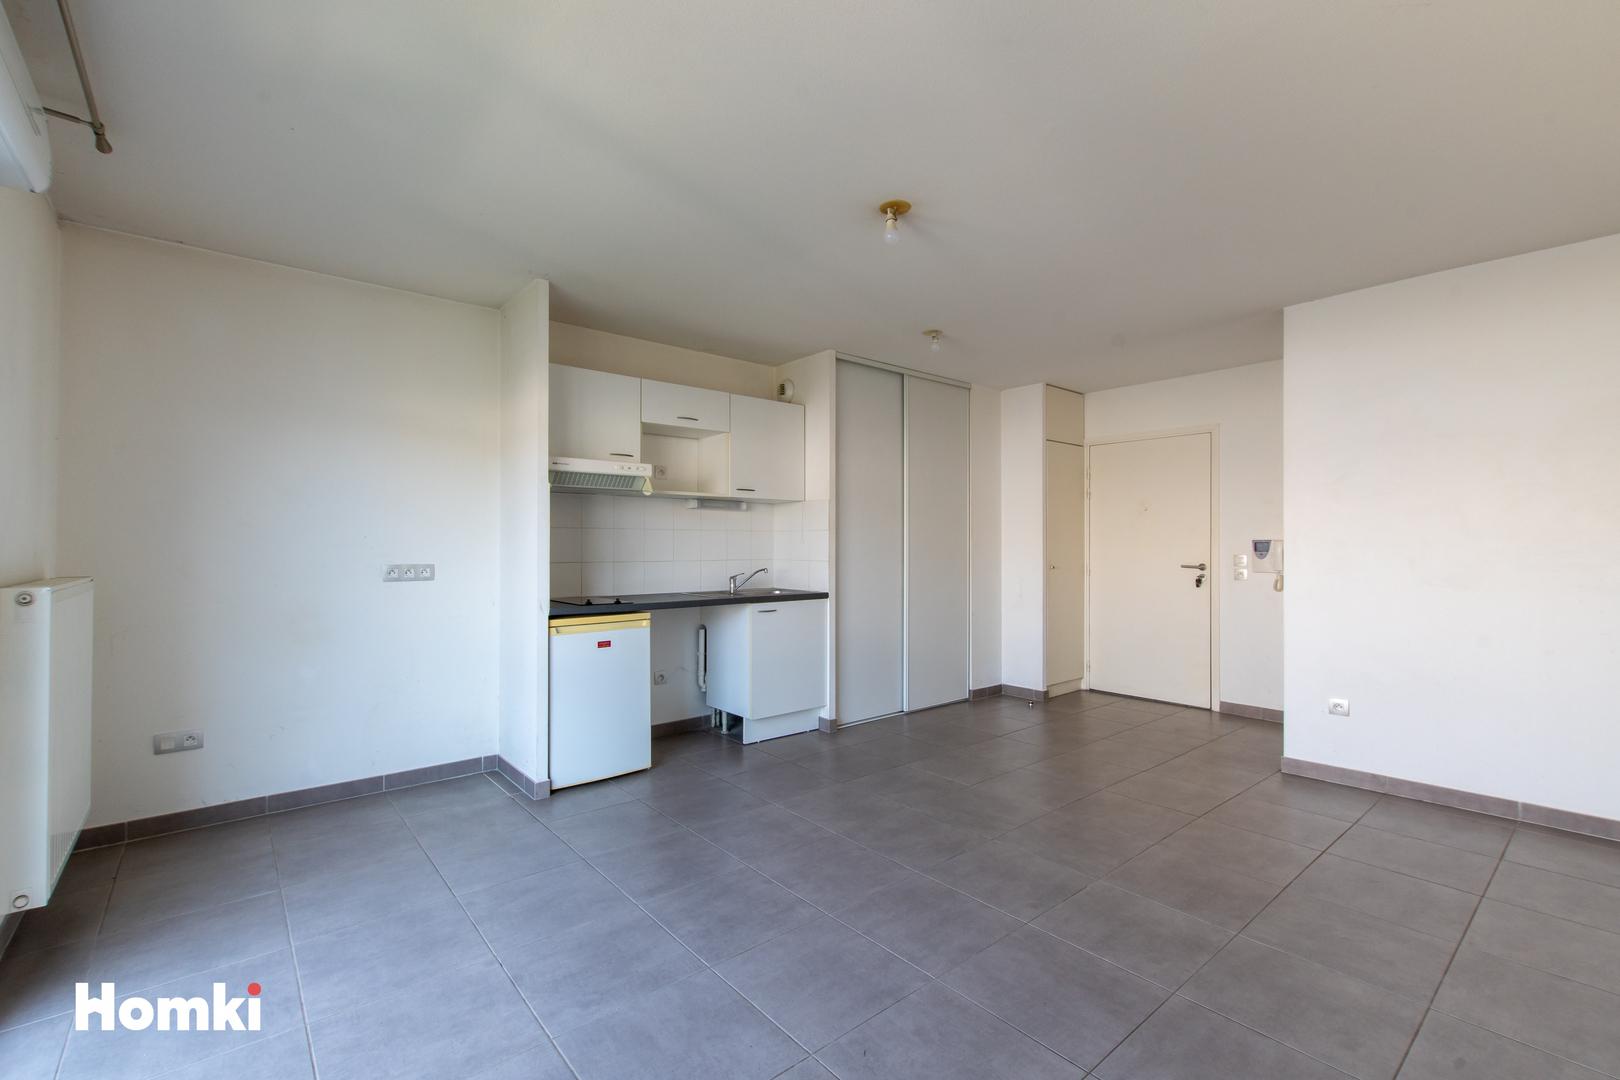 Homki - Vente Appartement  de 45.0 m² à Castelnau le lez 34170